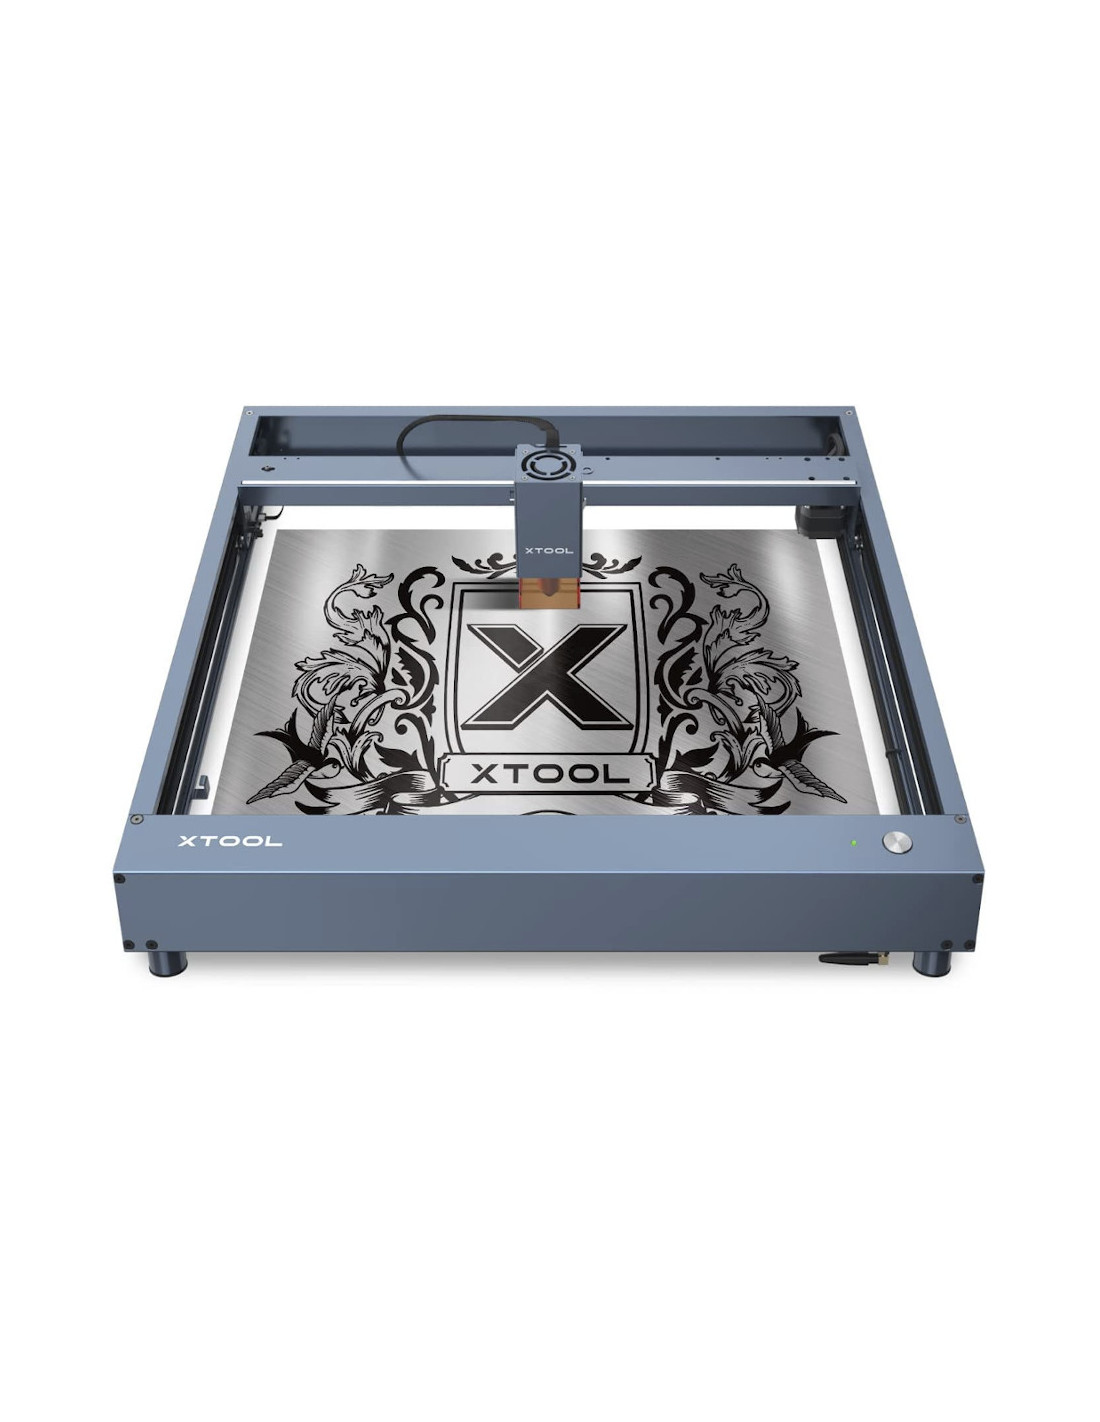 xTool D1 Pro 5W - Máquina de corte e gravação a laser